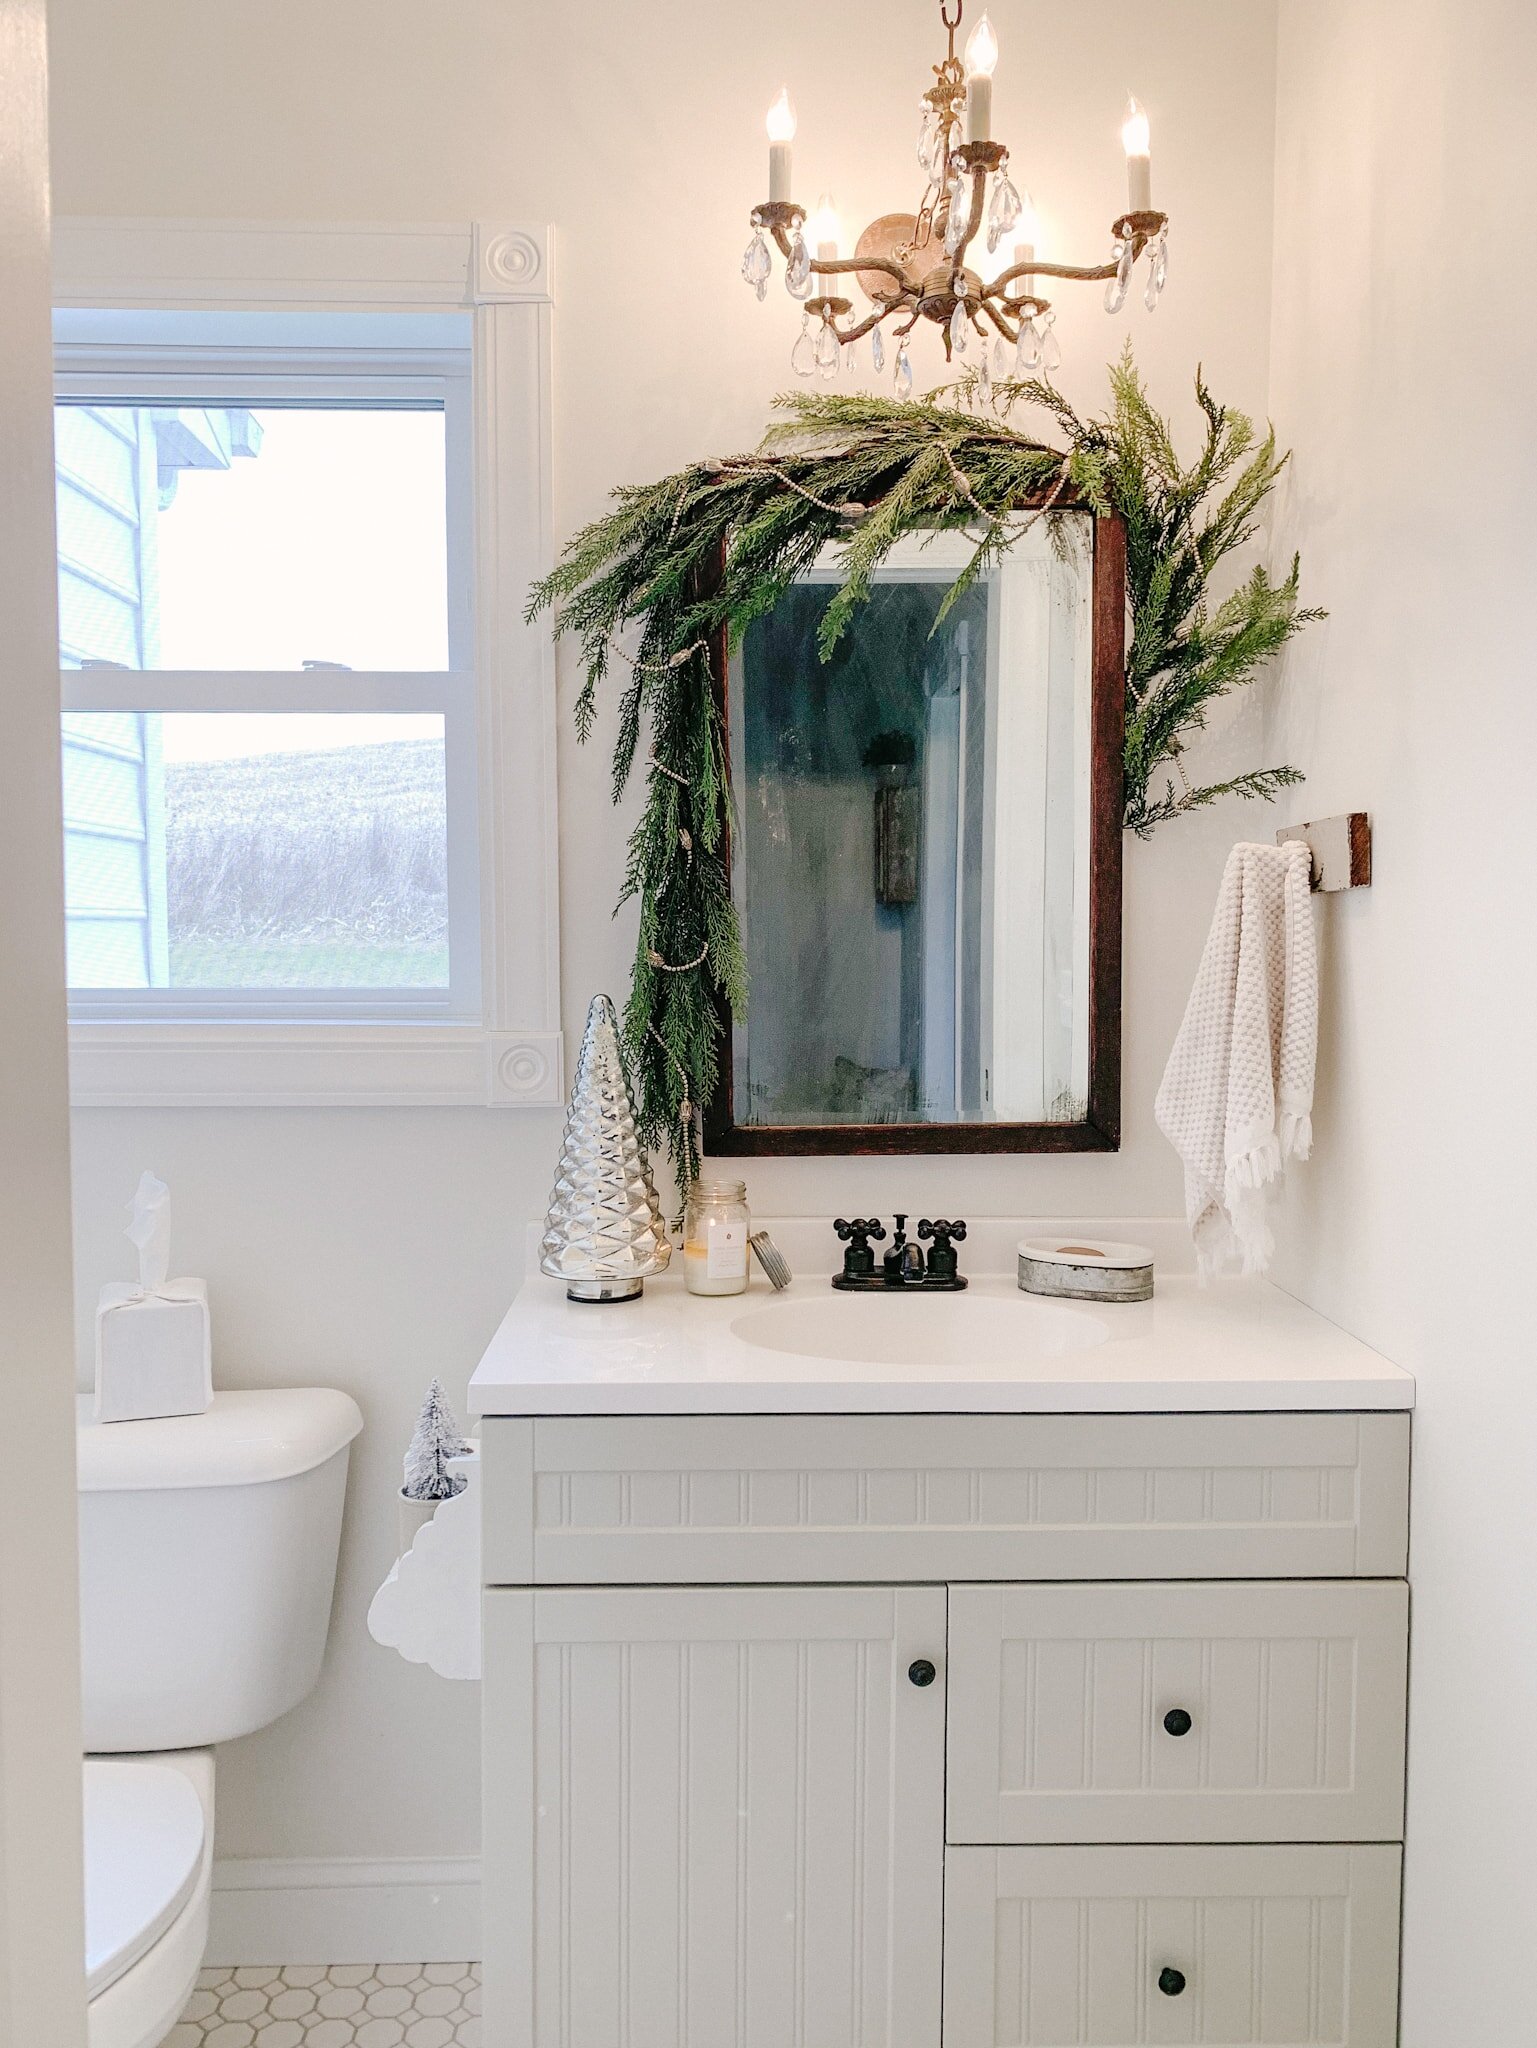 Pretty Small Bathroom Garland Decoration On Mirror : Christmas Bathroom Decor Ideas